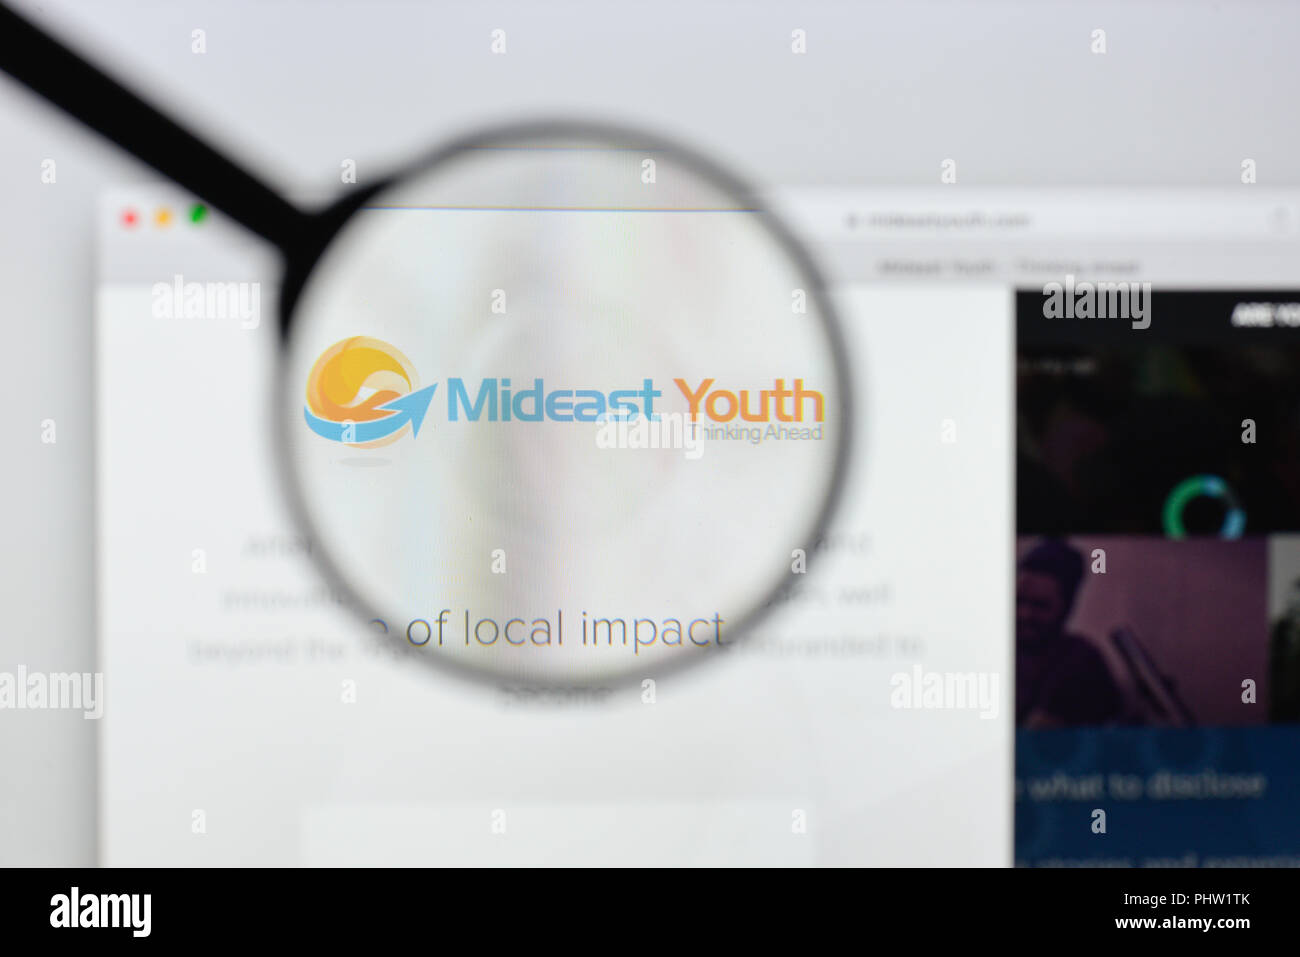 Mailand, Italien - 20 August 2018: Mittlerer Osten Jugend Homepage. Mittlerer Osten Jugend Logo sichtbar. Stockfoto